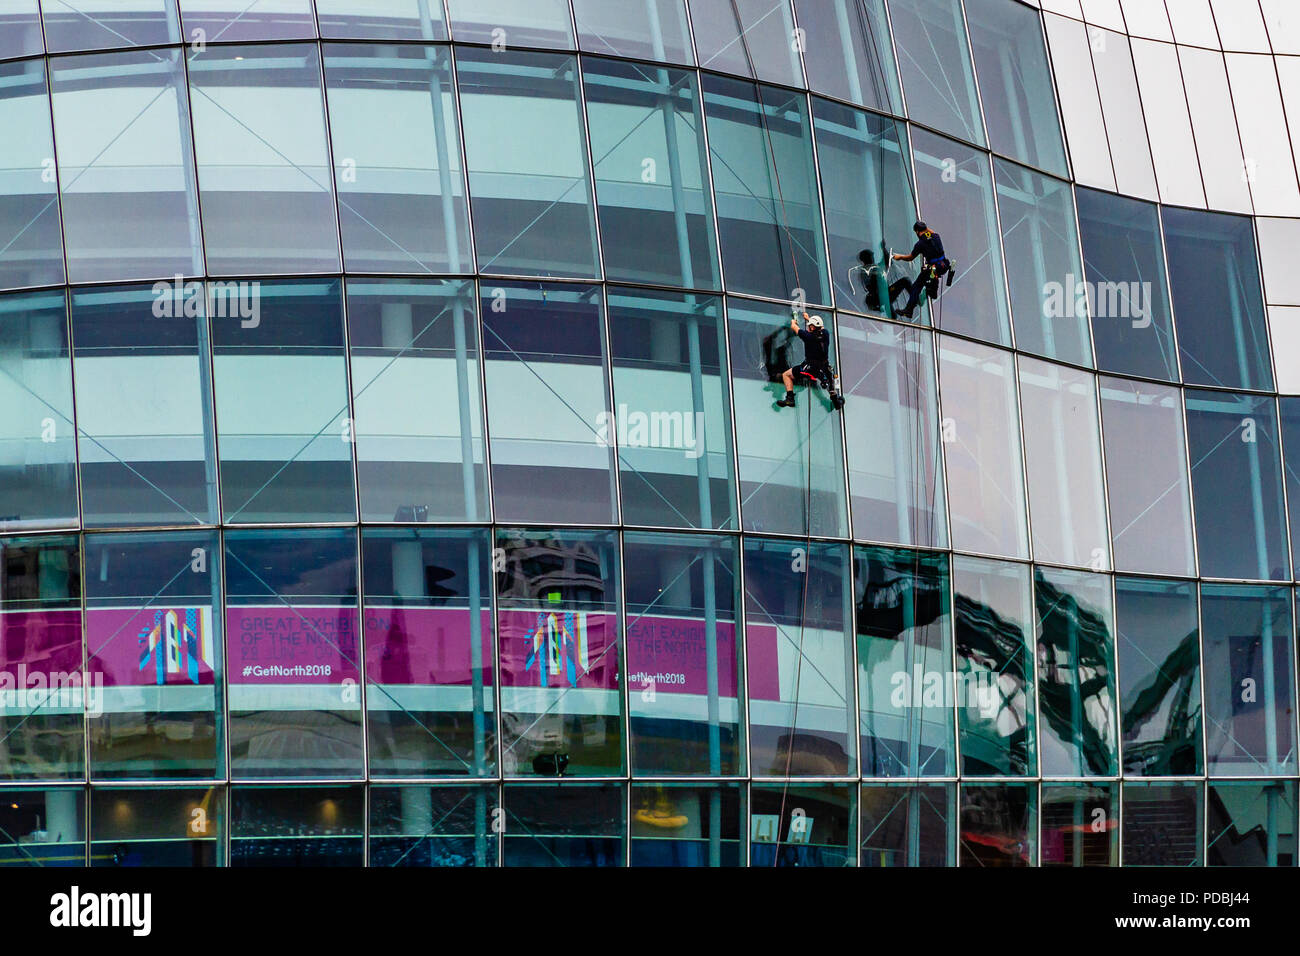 Due detergenti per finestre lavorando alla salvia, un punto di riferimento concert hall in una curva in vetro e acciaio inossidabile edificio inaugurato nel 2004, Gateshead, Regno Unito. Foto Stock